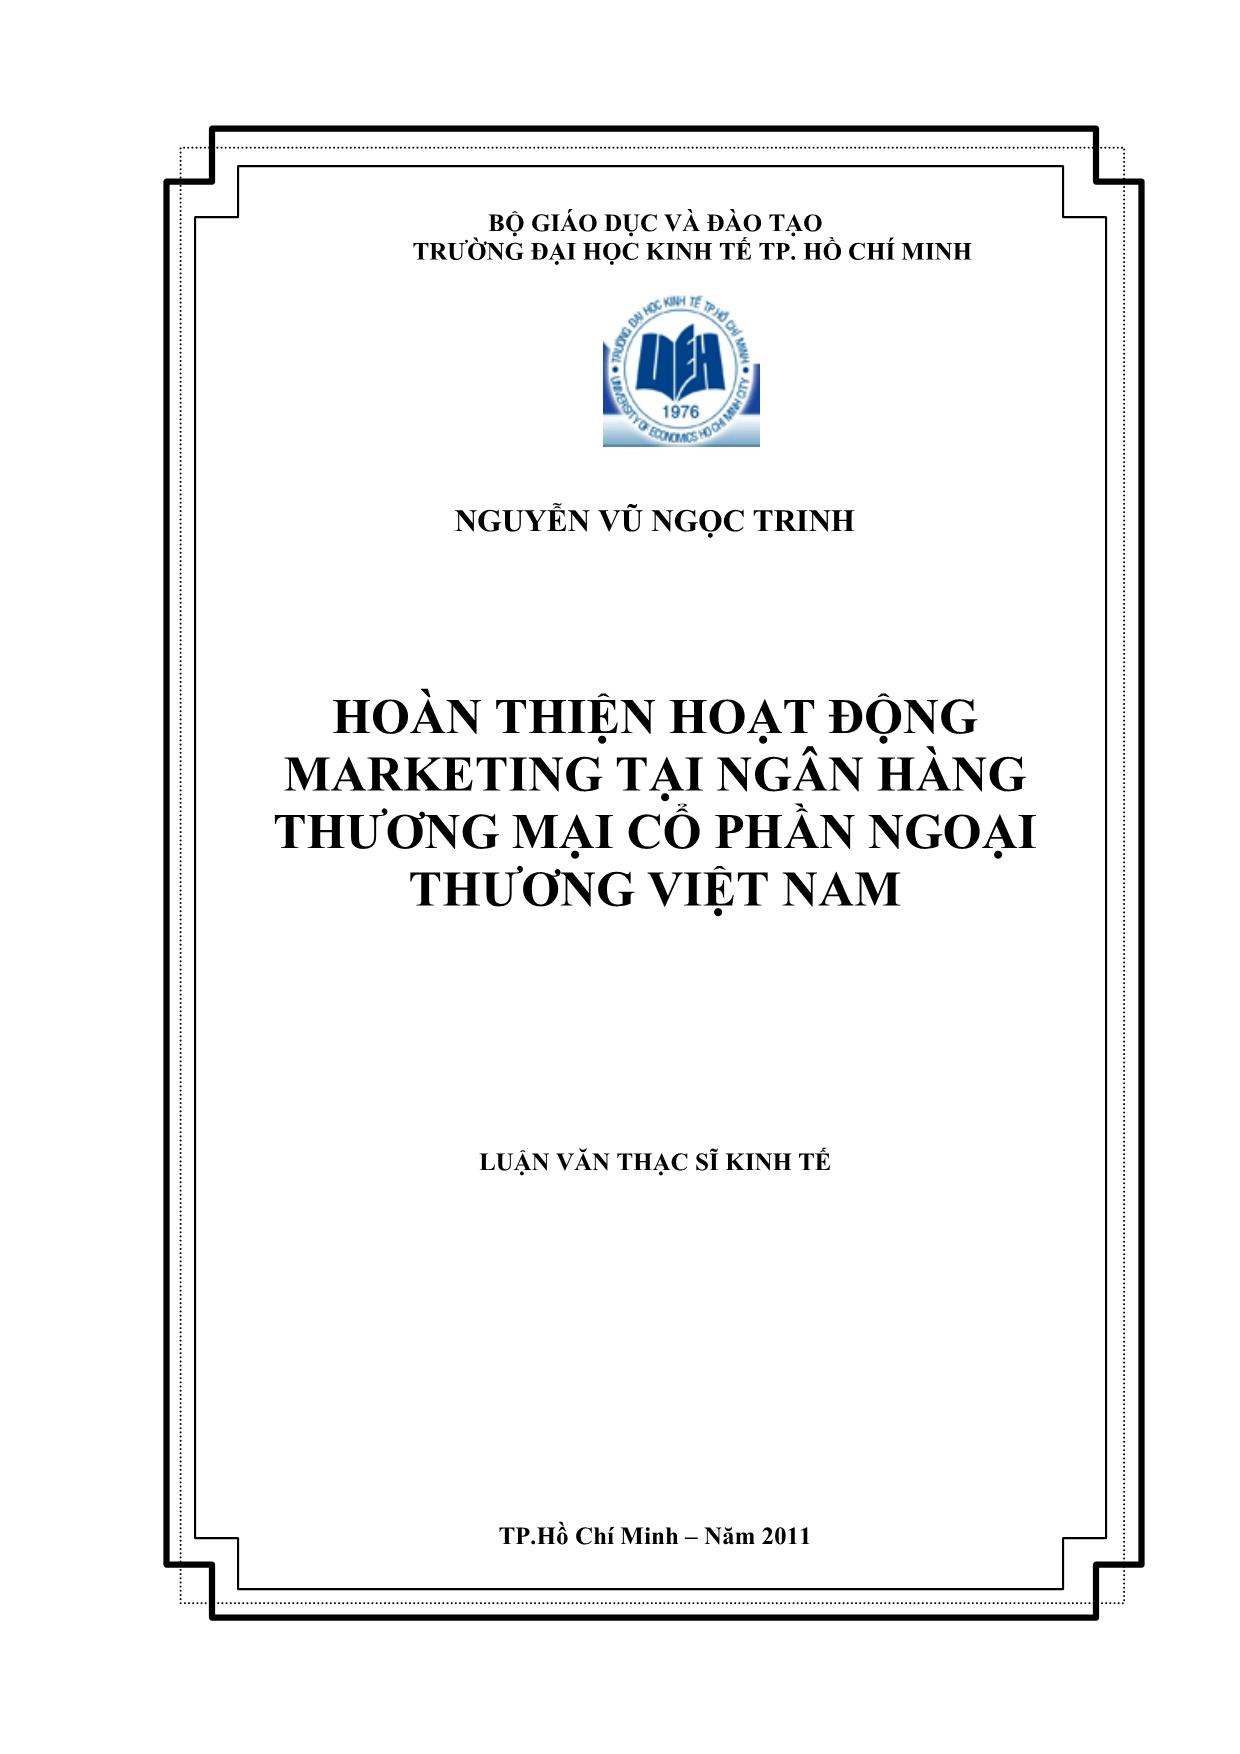 Luận văn Hoàn thiện hoạt động Marketing tại ngân hàng thương mại cổ phần ngoại thương Việt Nam trang 1